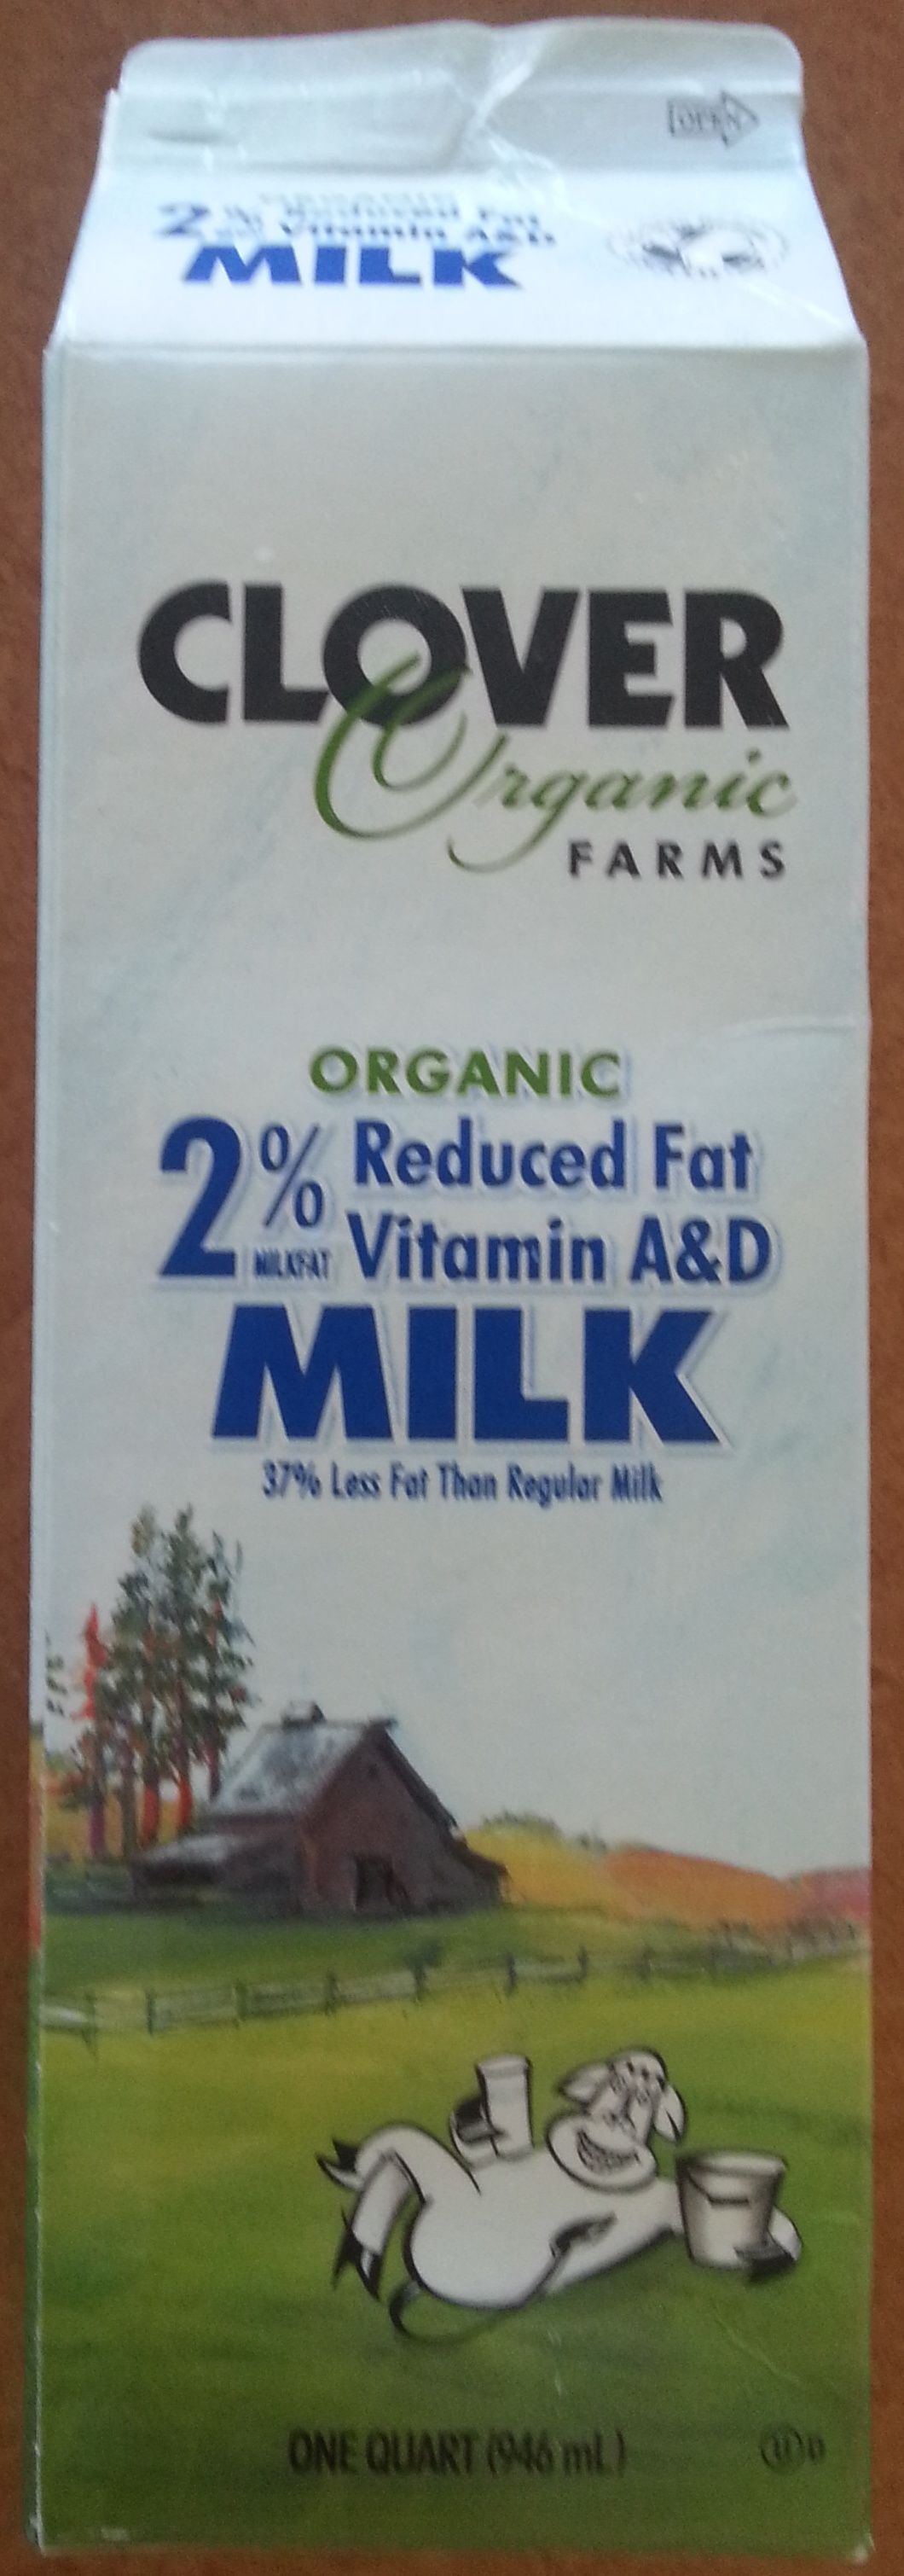 2% reduced fat milk - Producto - en